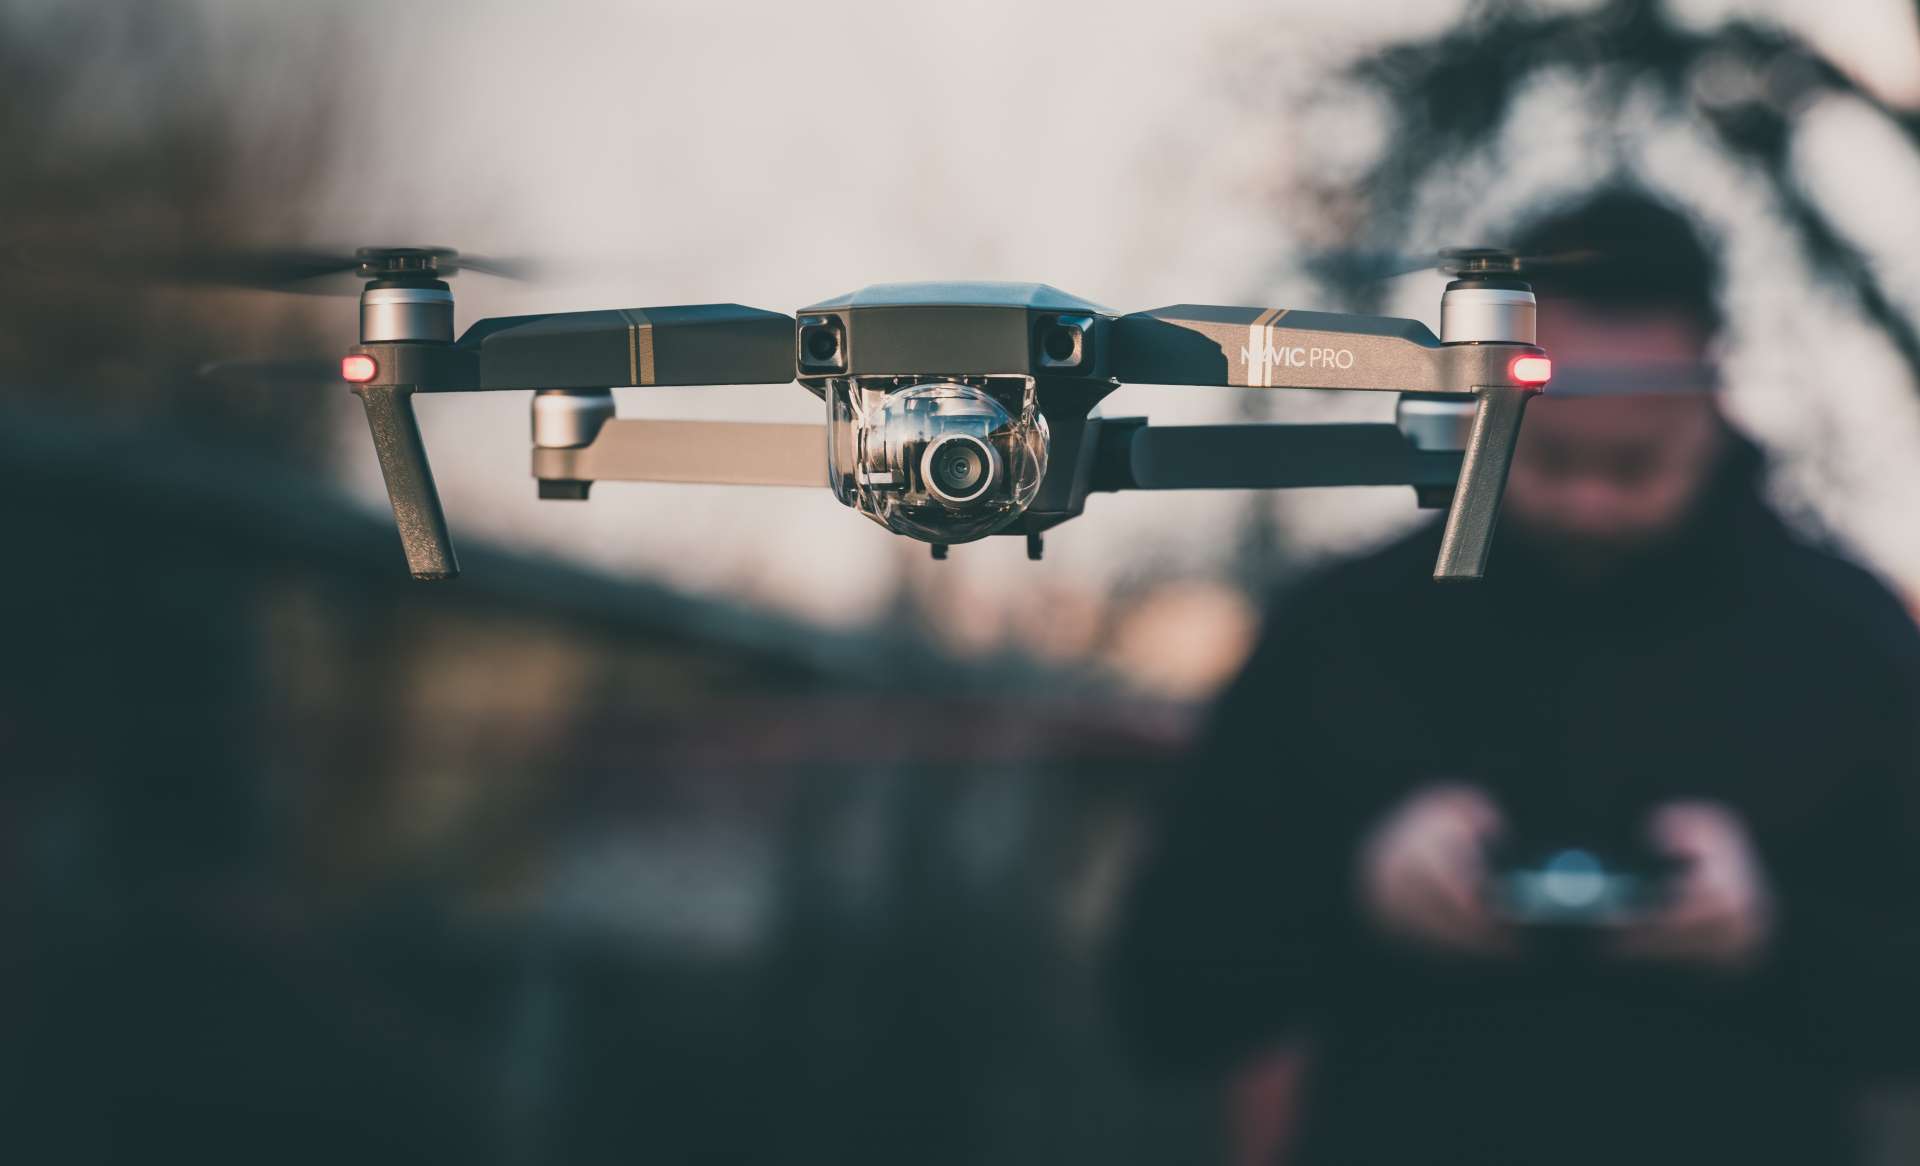 Bedrijven hebben drones steeds meer nodig